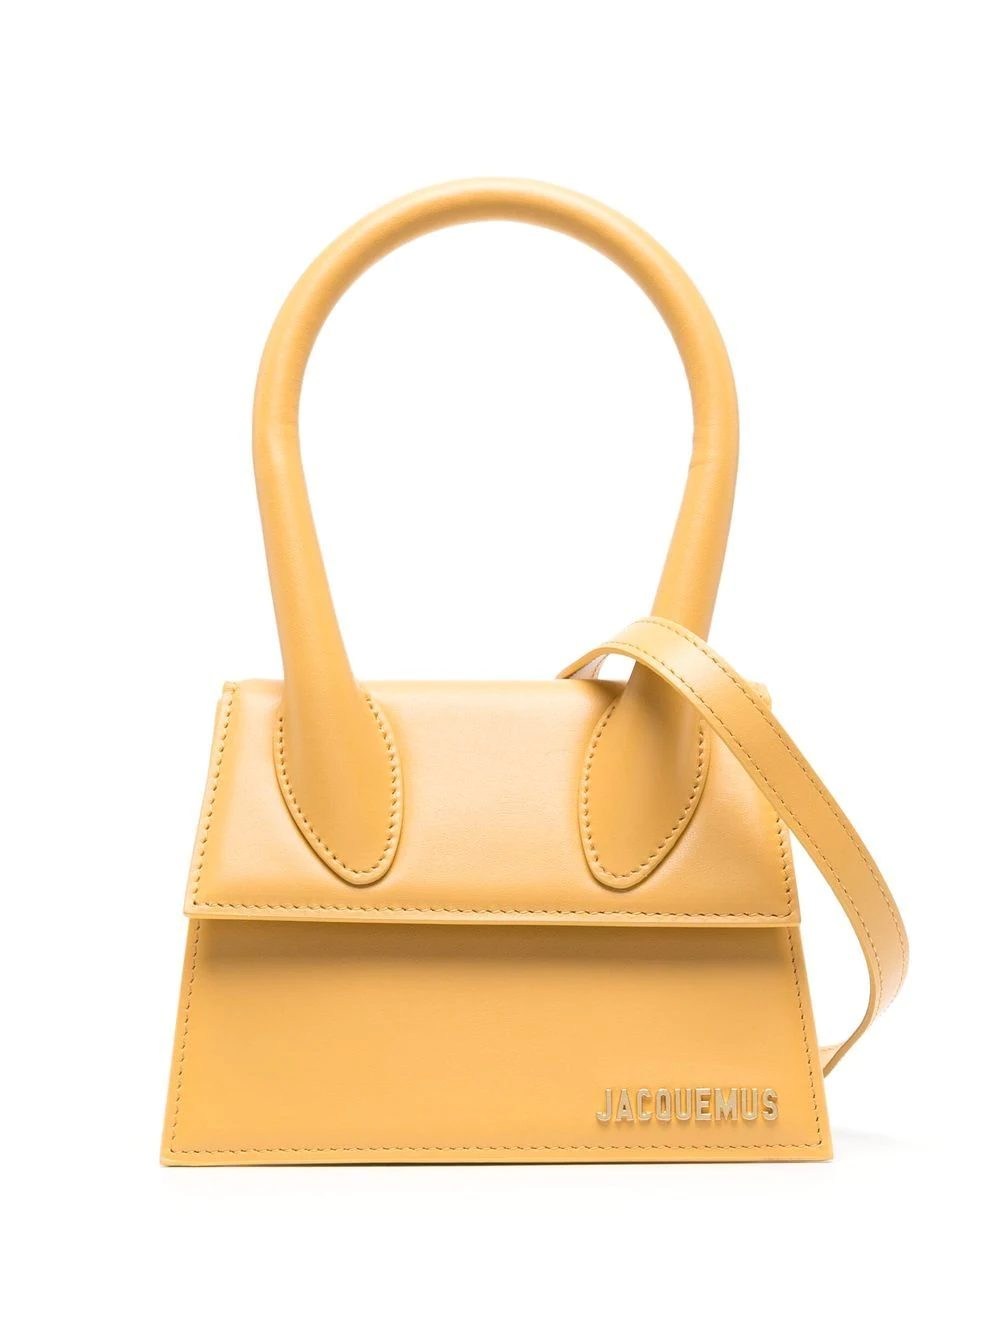 Jacquemus Le Chiquito Mini Tote Bag In Yellow & Orange